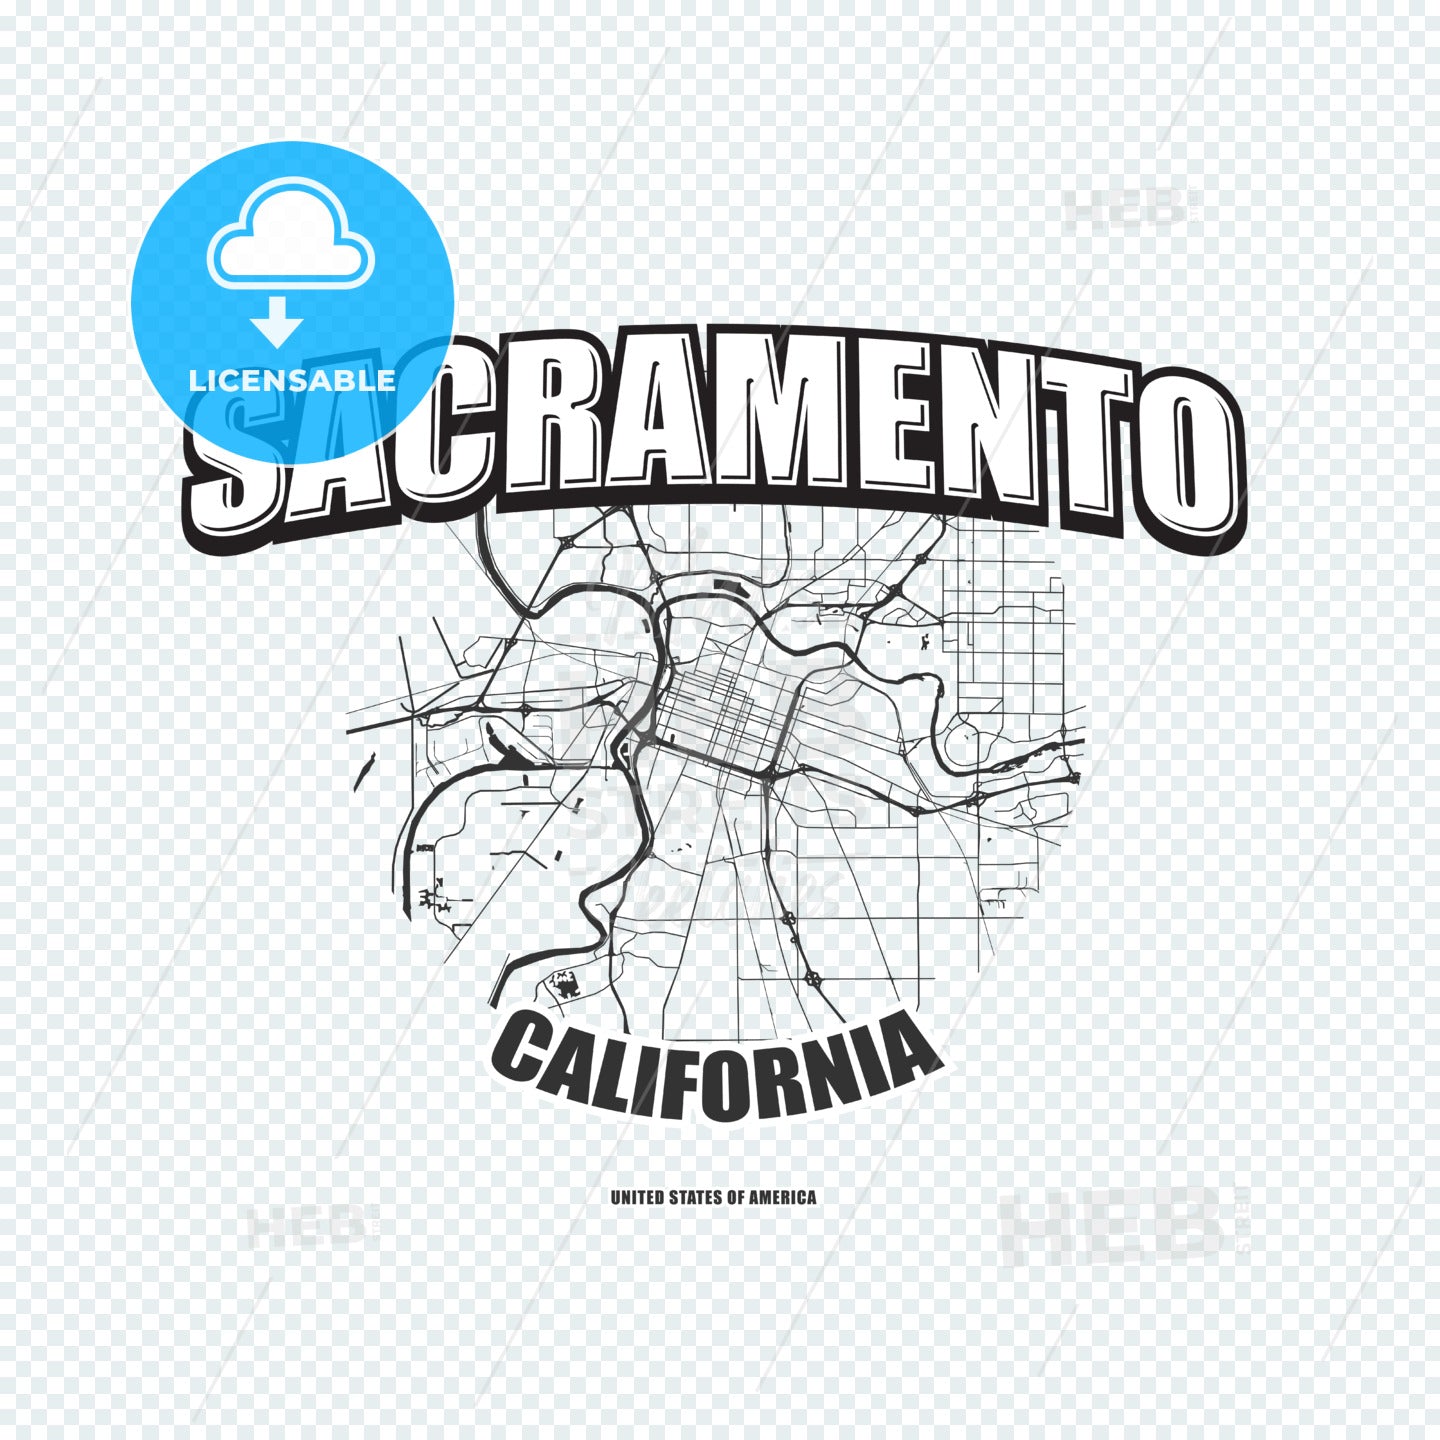 Sacramento, California, logo artwork – instant download